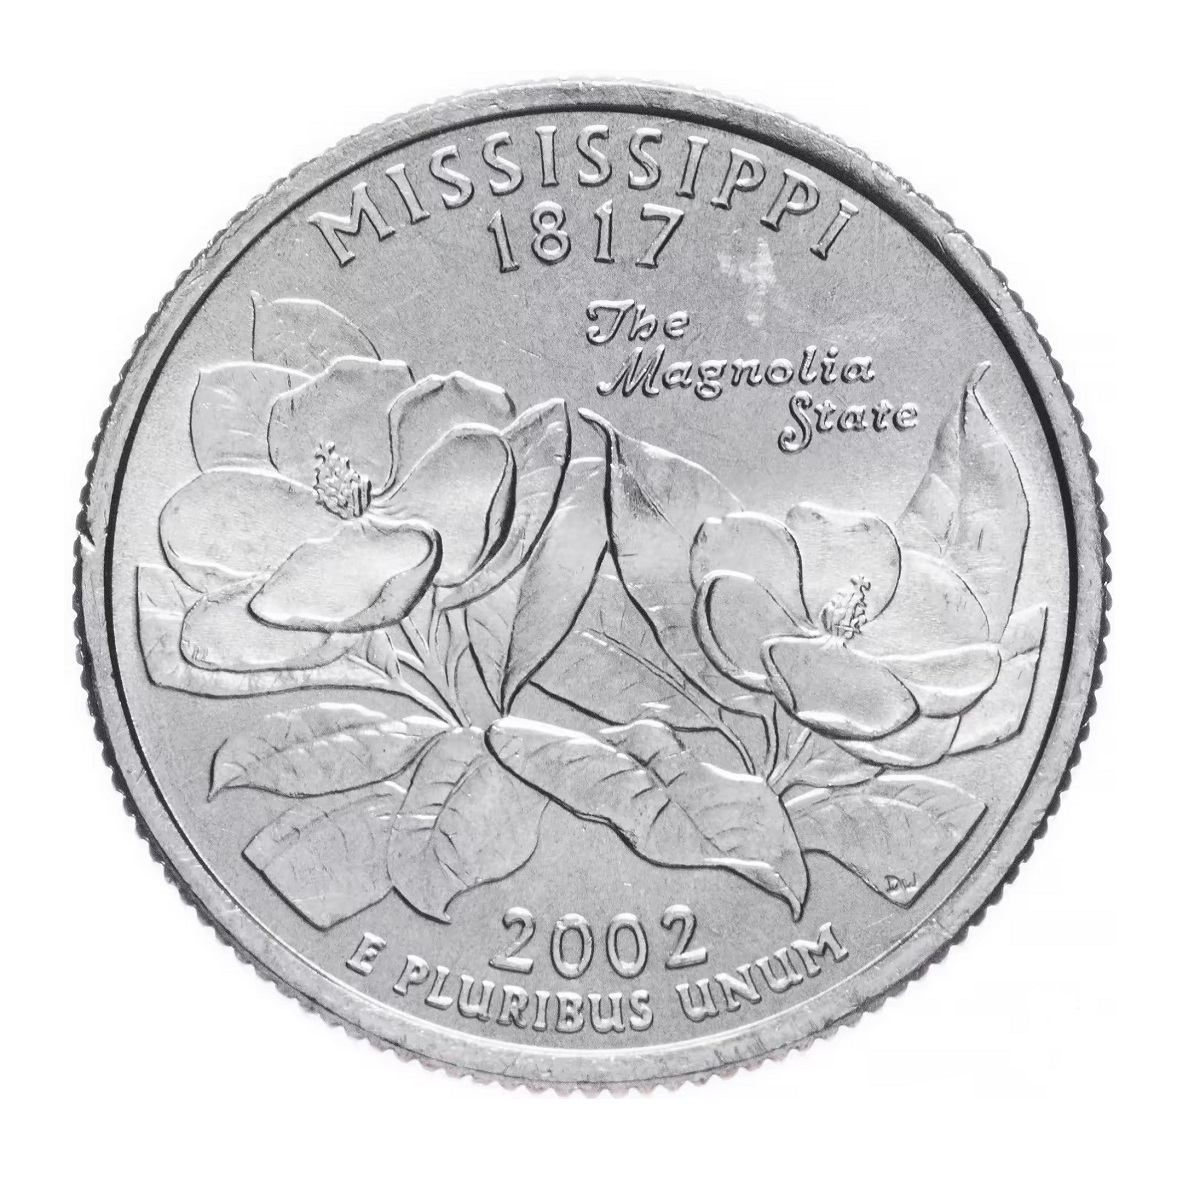 Монета 25 центов квотер, 1/4 доллара, Штаты и территории, Миссисипи, США, 2002 UNC